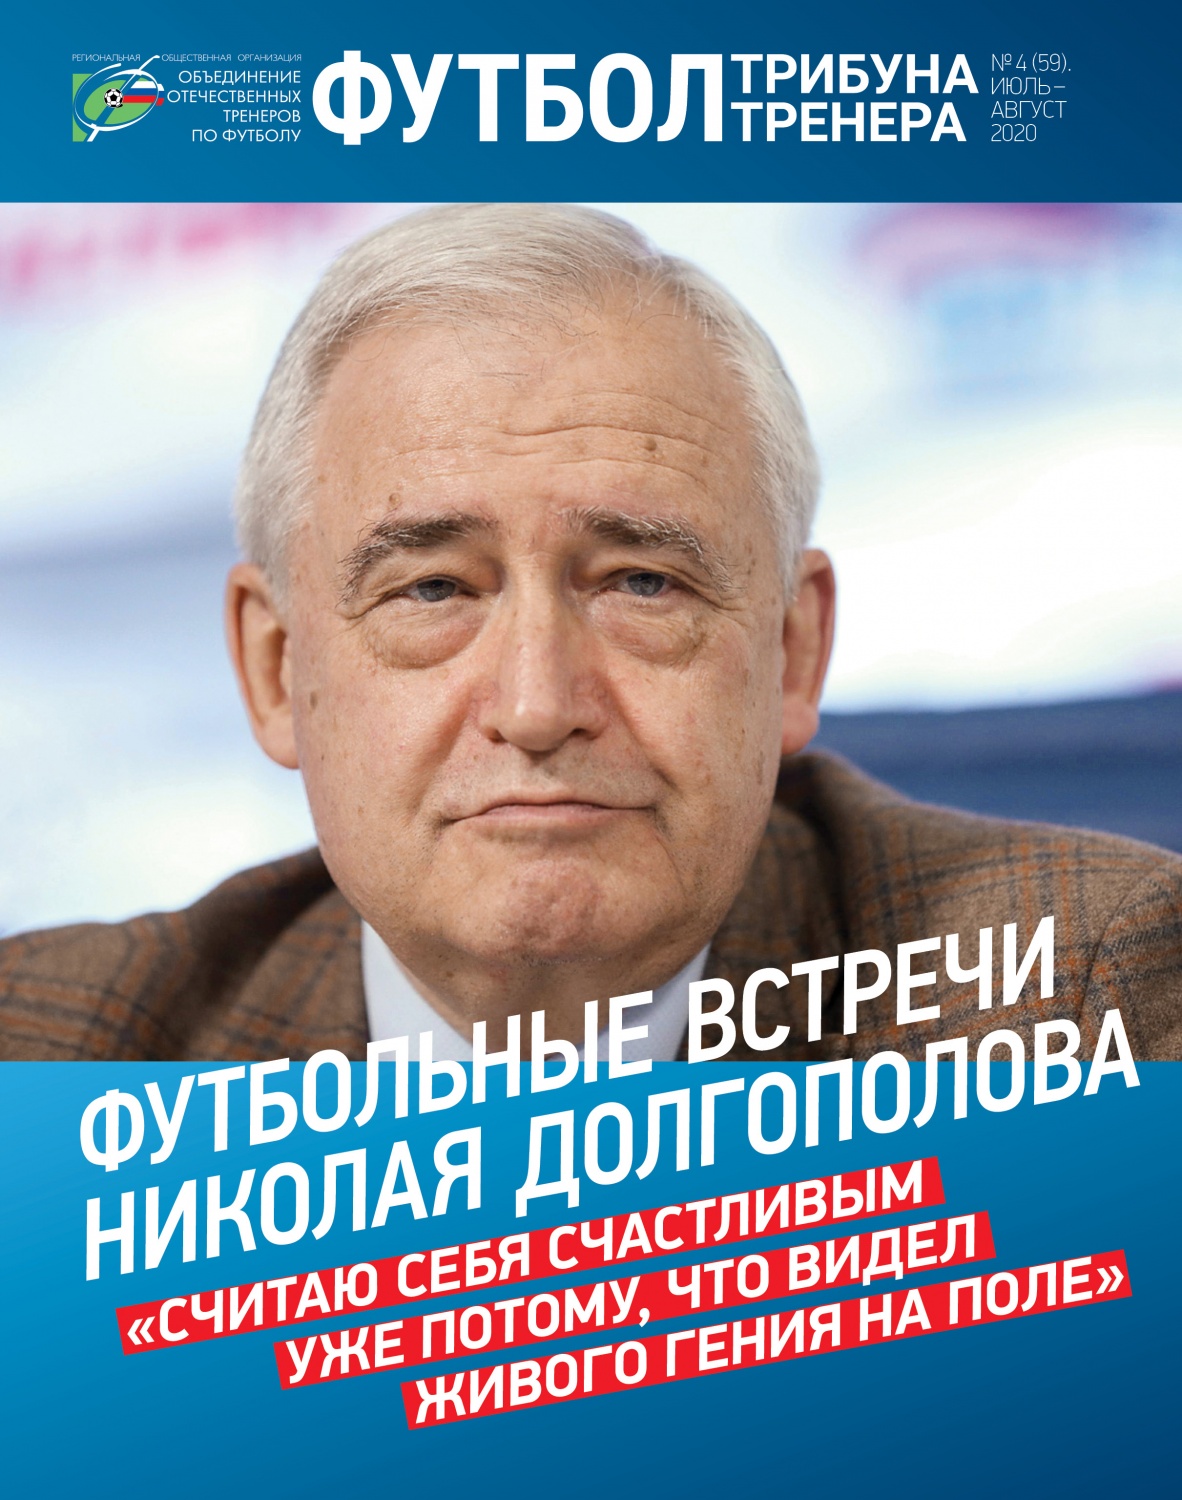 Журнал "Футбол: трибуна тренера" №4(59)